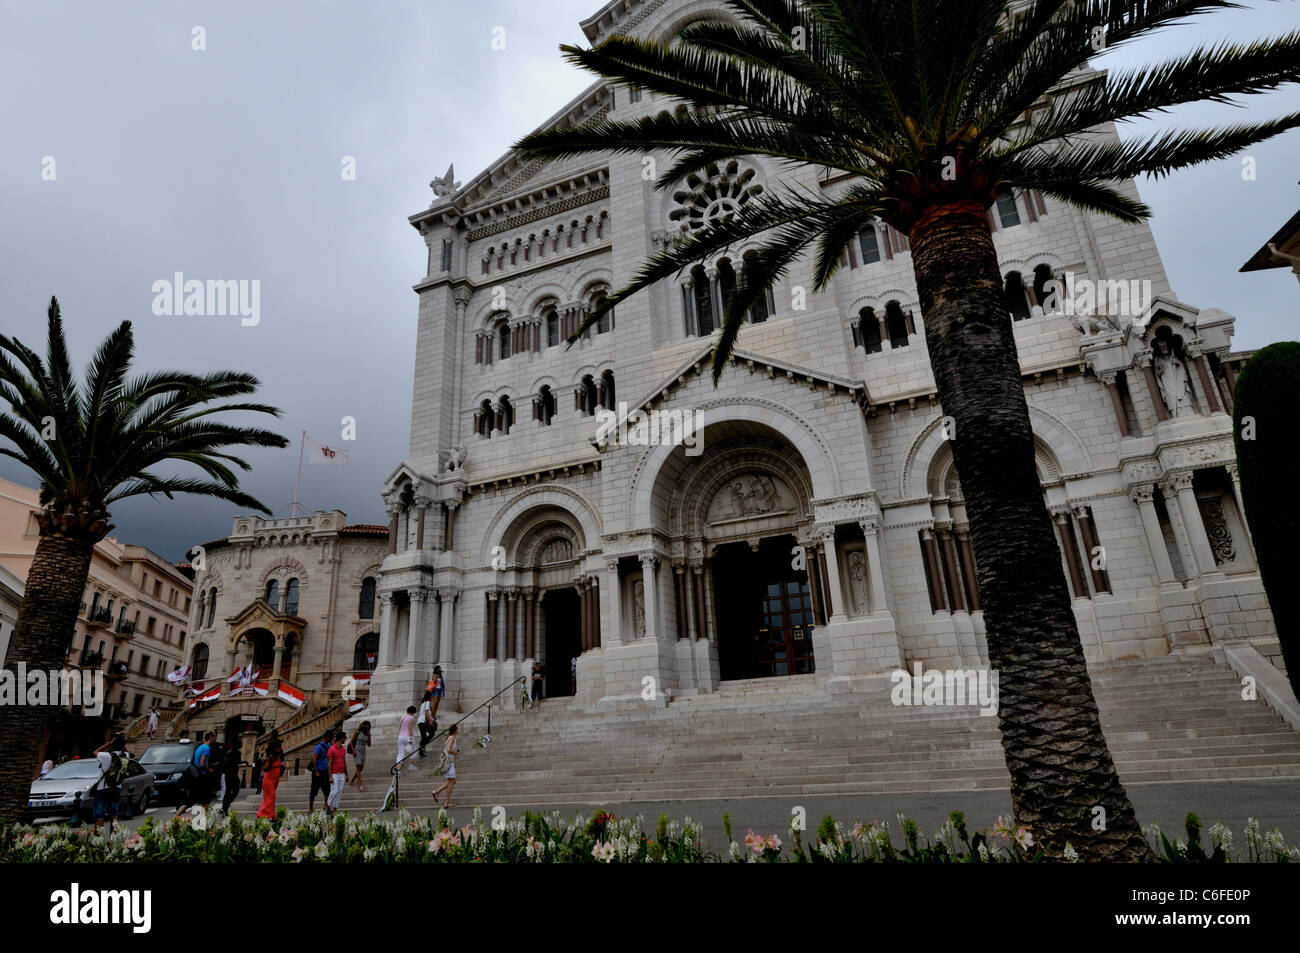 Vista esterna della Cattedrale di Monaco in marmo bianco in età romana di stile bizantino. Foto Stock